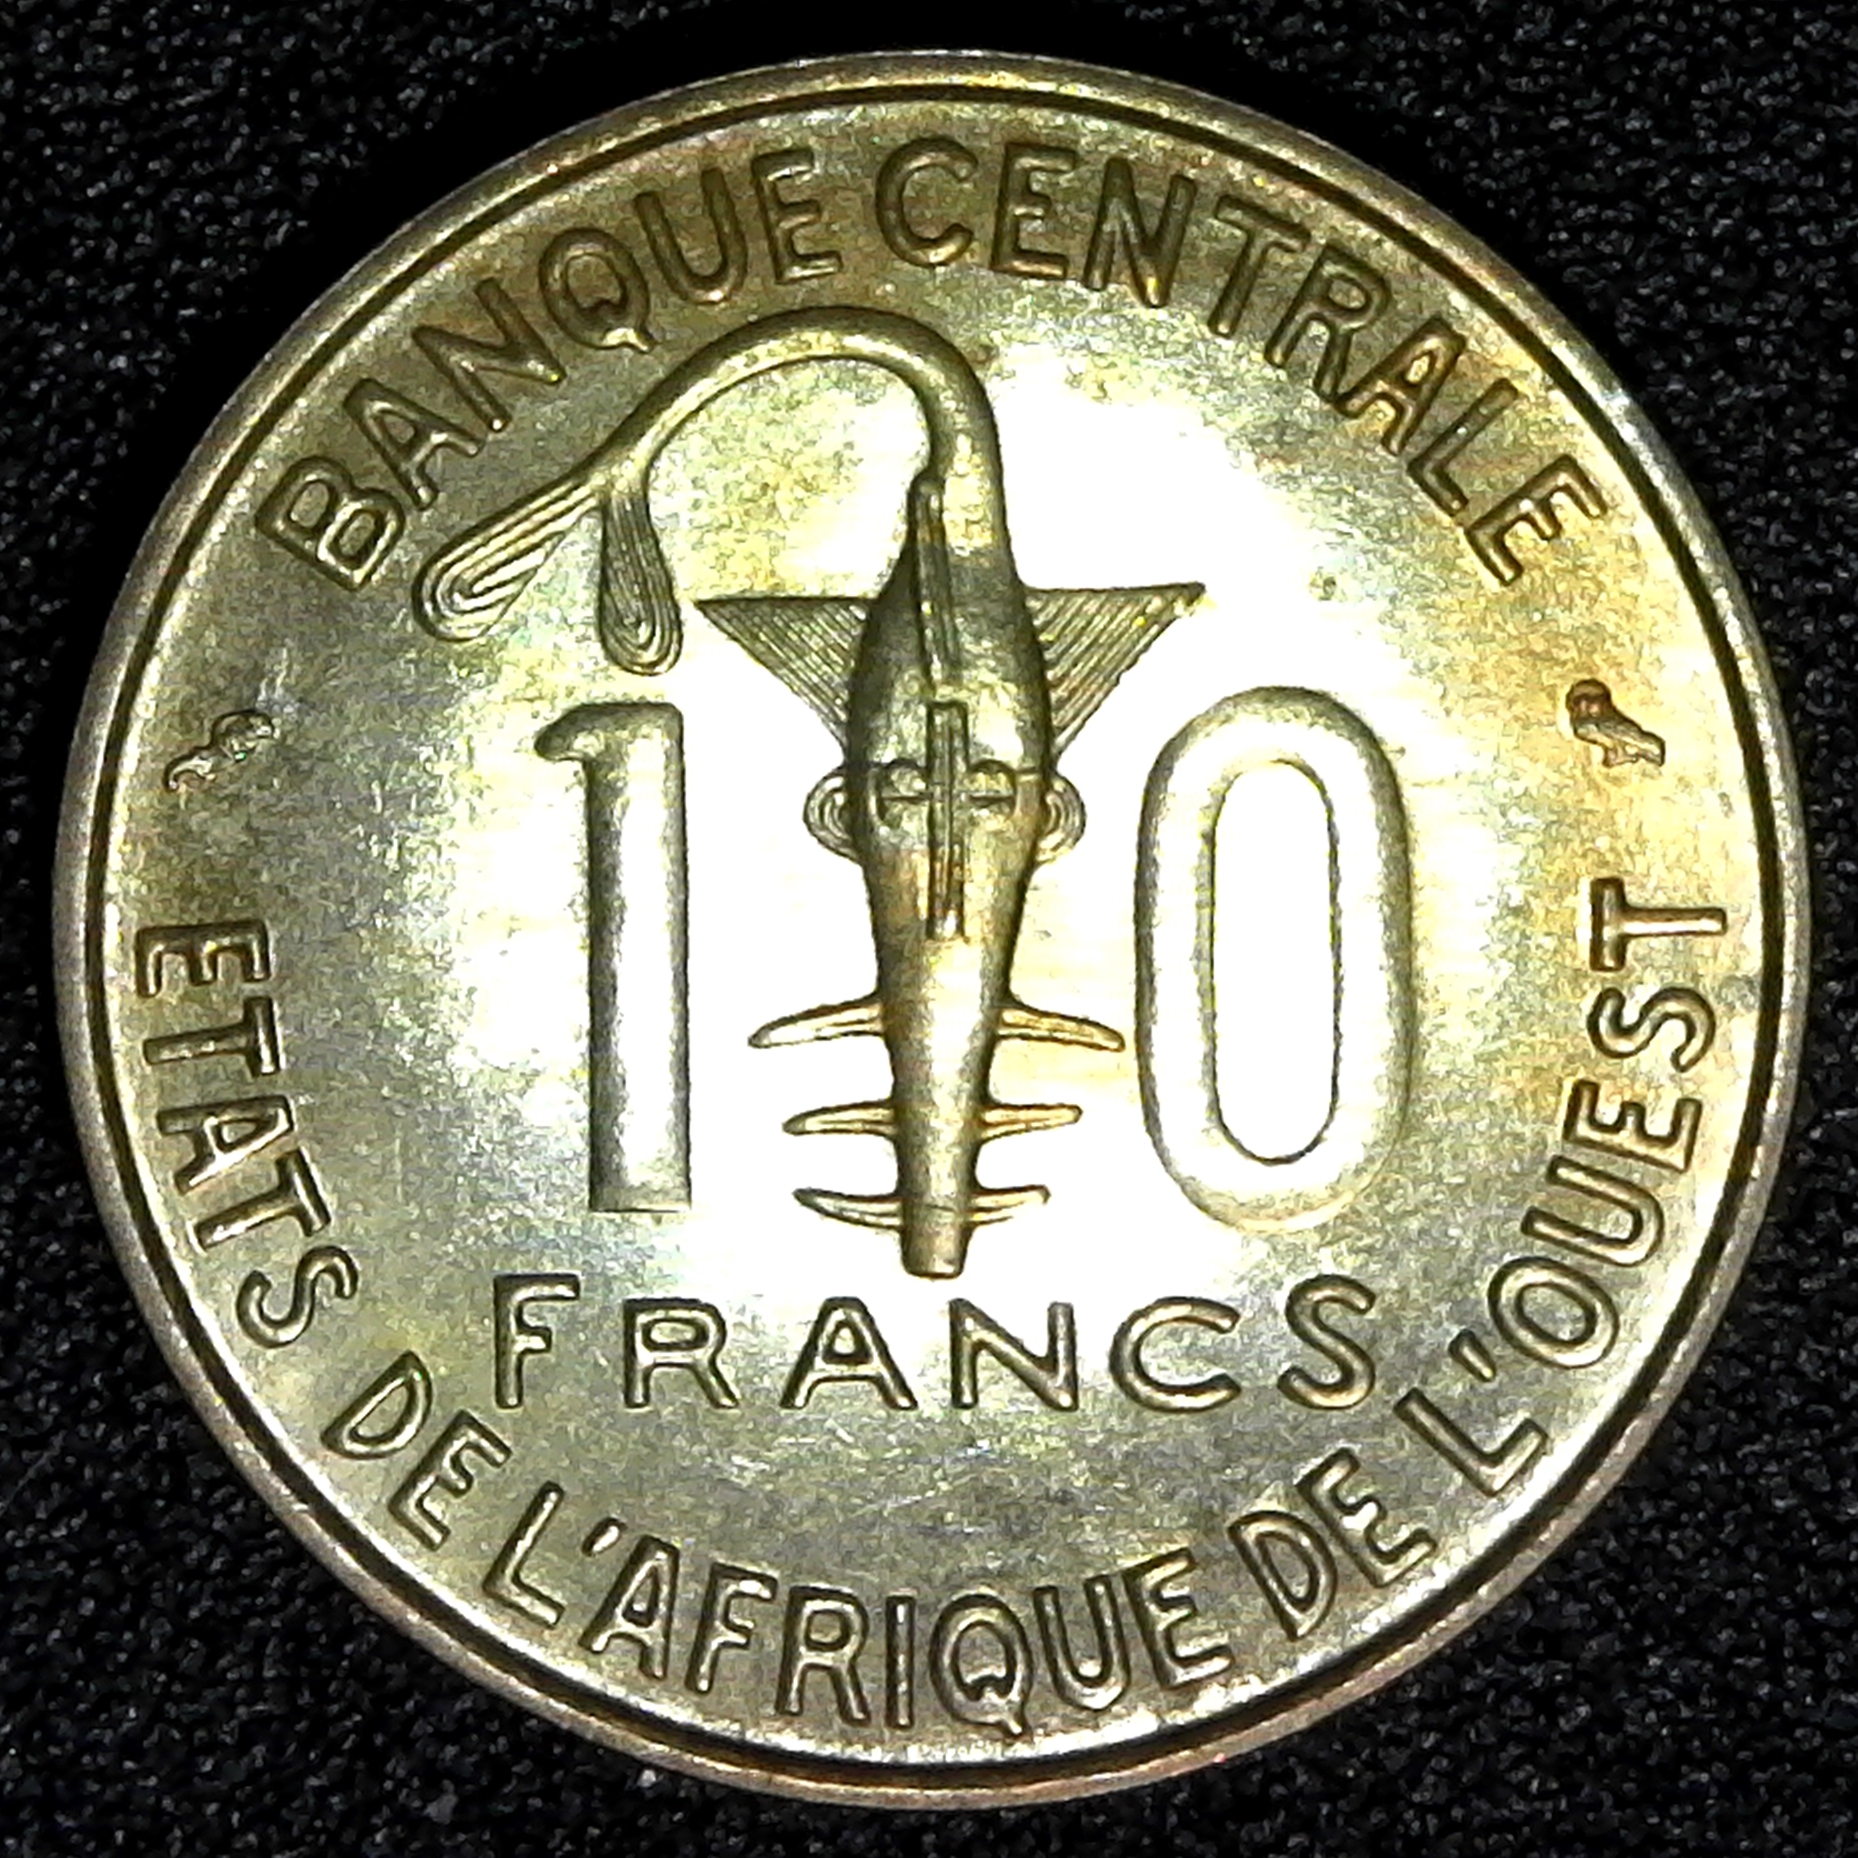 West African States 10 Francs 1971 obv.jpg